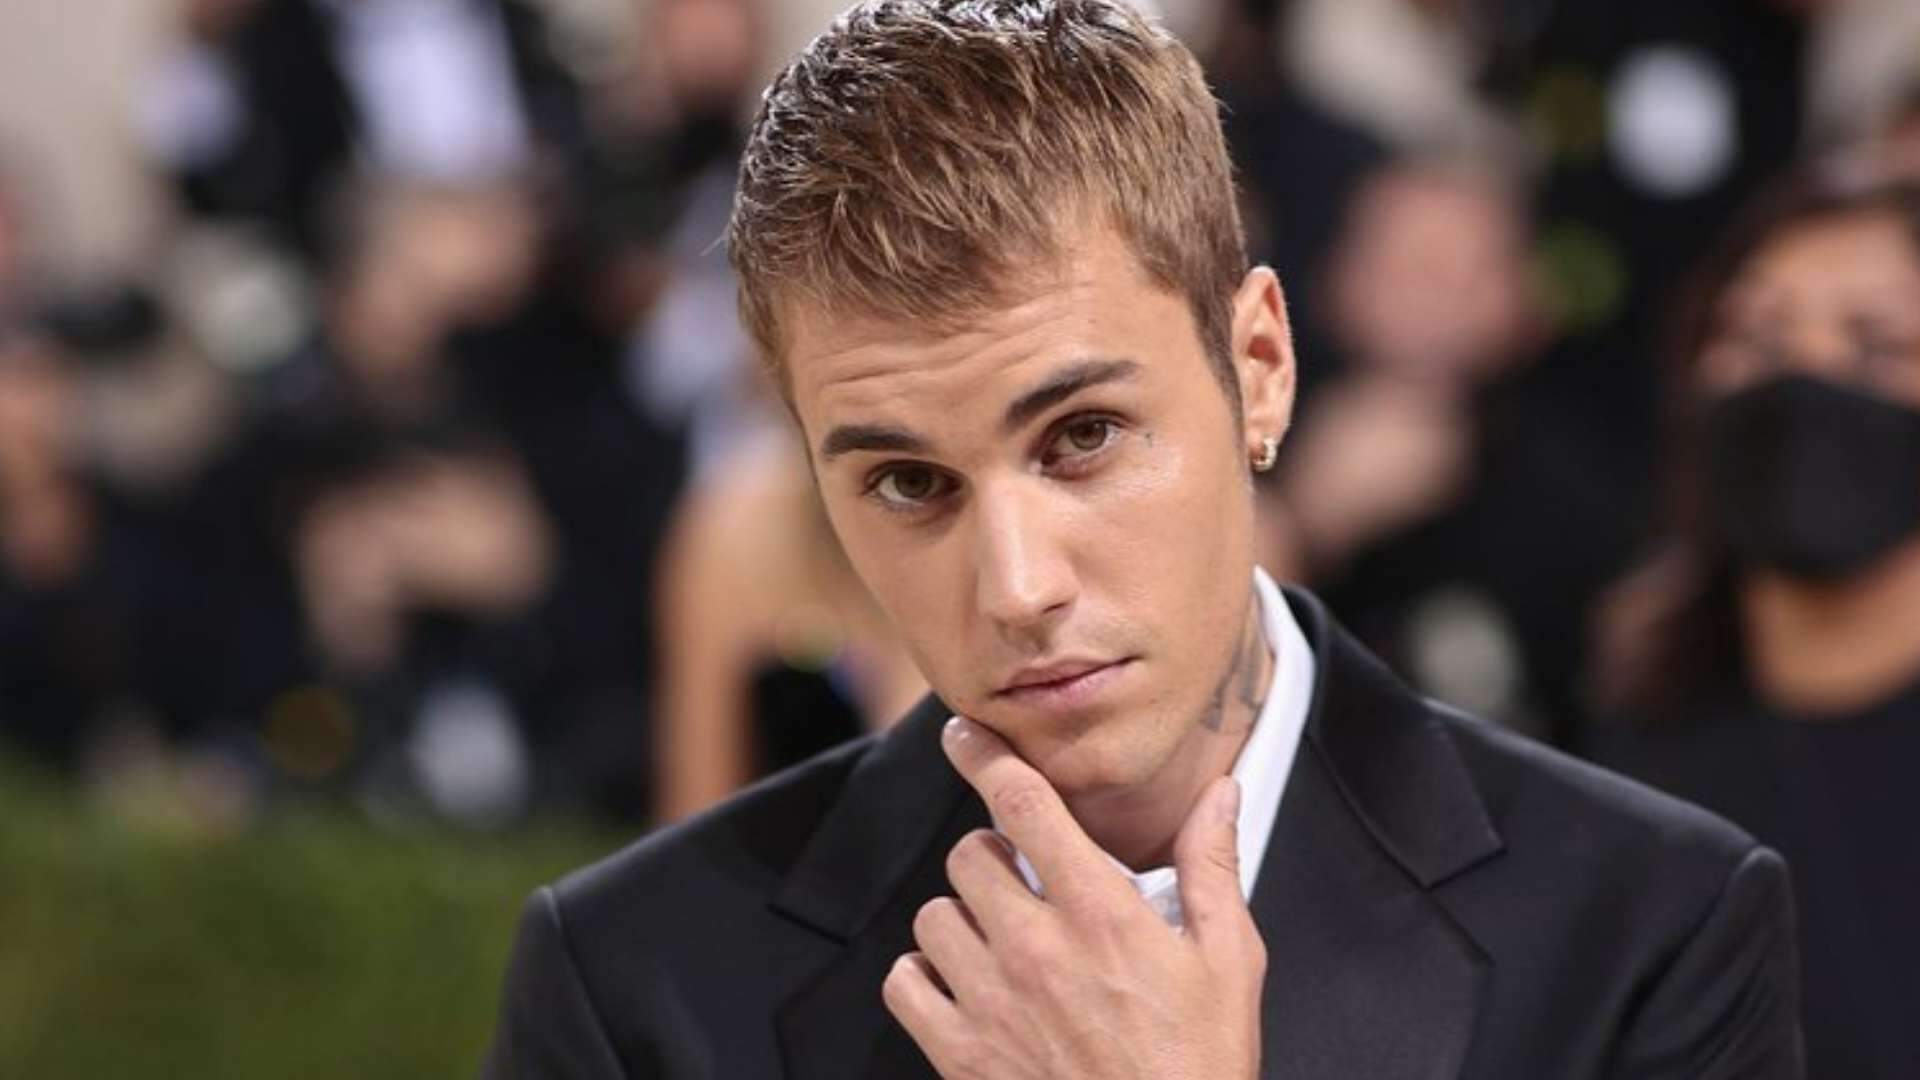 Justin Bieber supera recorde de cantor famoso em parada musical e surpreende web - Metropolitana FM